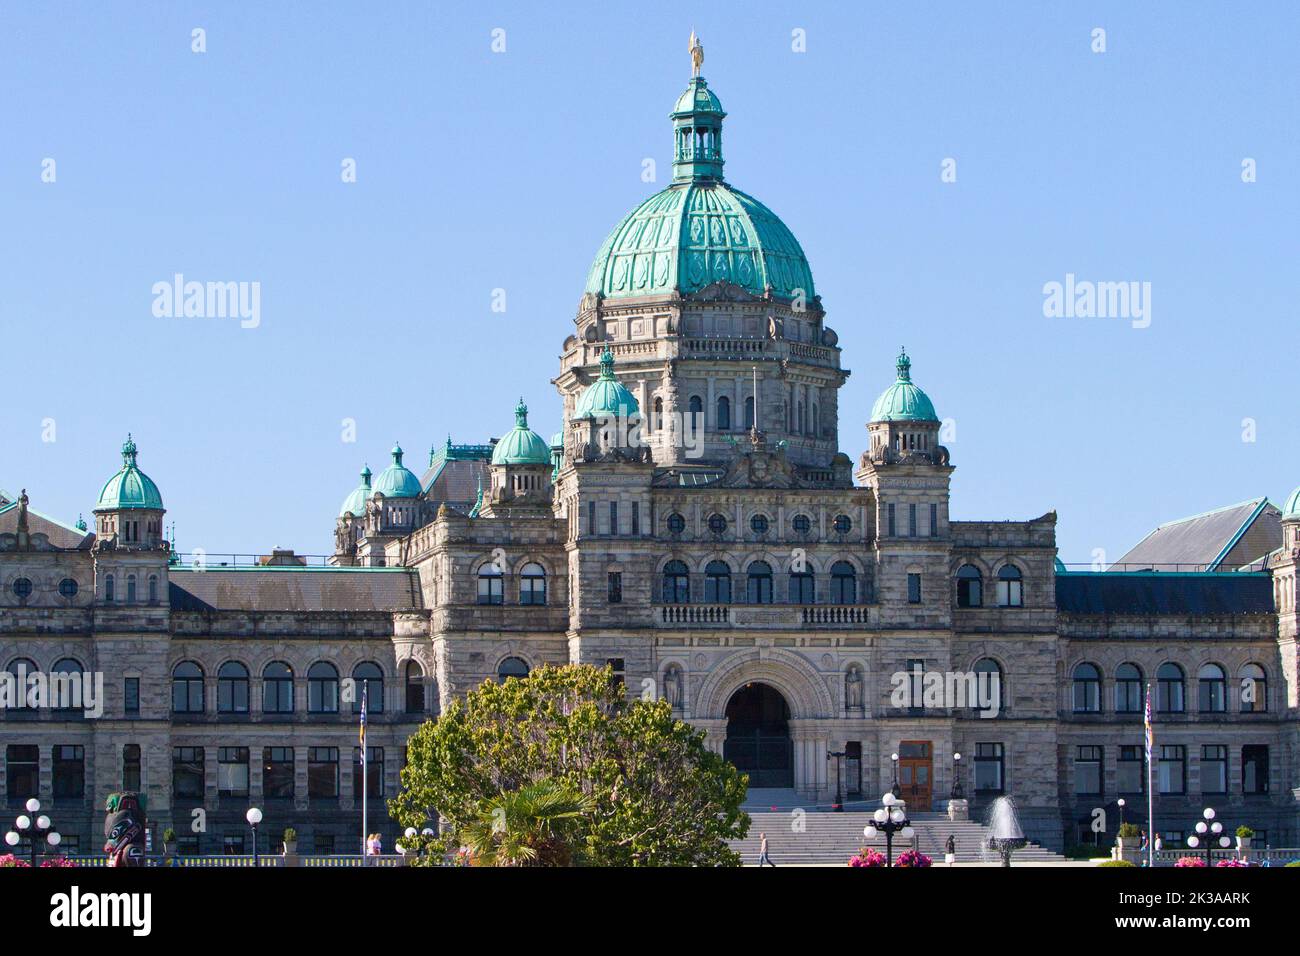 Una vista panoramica degli edifici del Parlamento della British Columbia a Victoria, British Columbia, Canada, sede dell'Assemblea legislativa della British Columbia Foto Stock